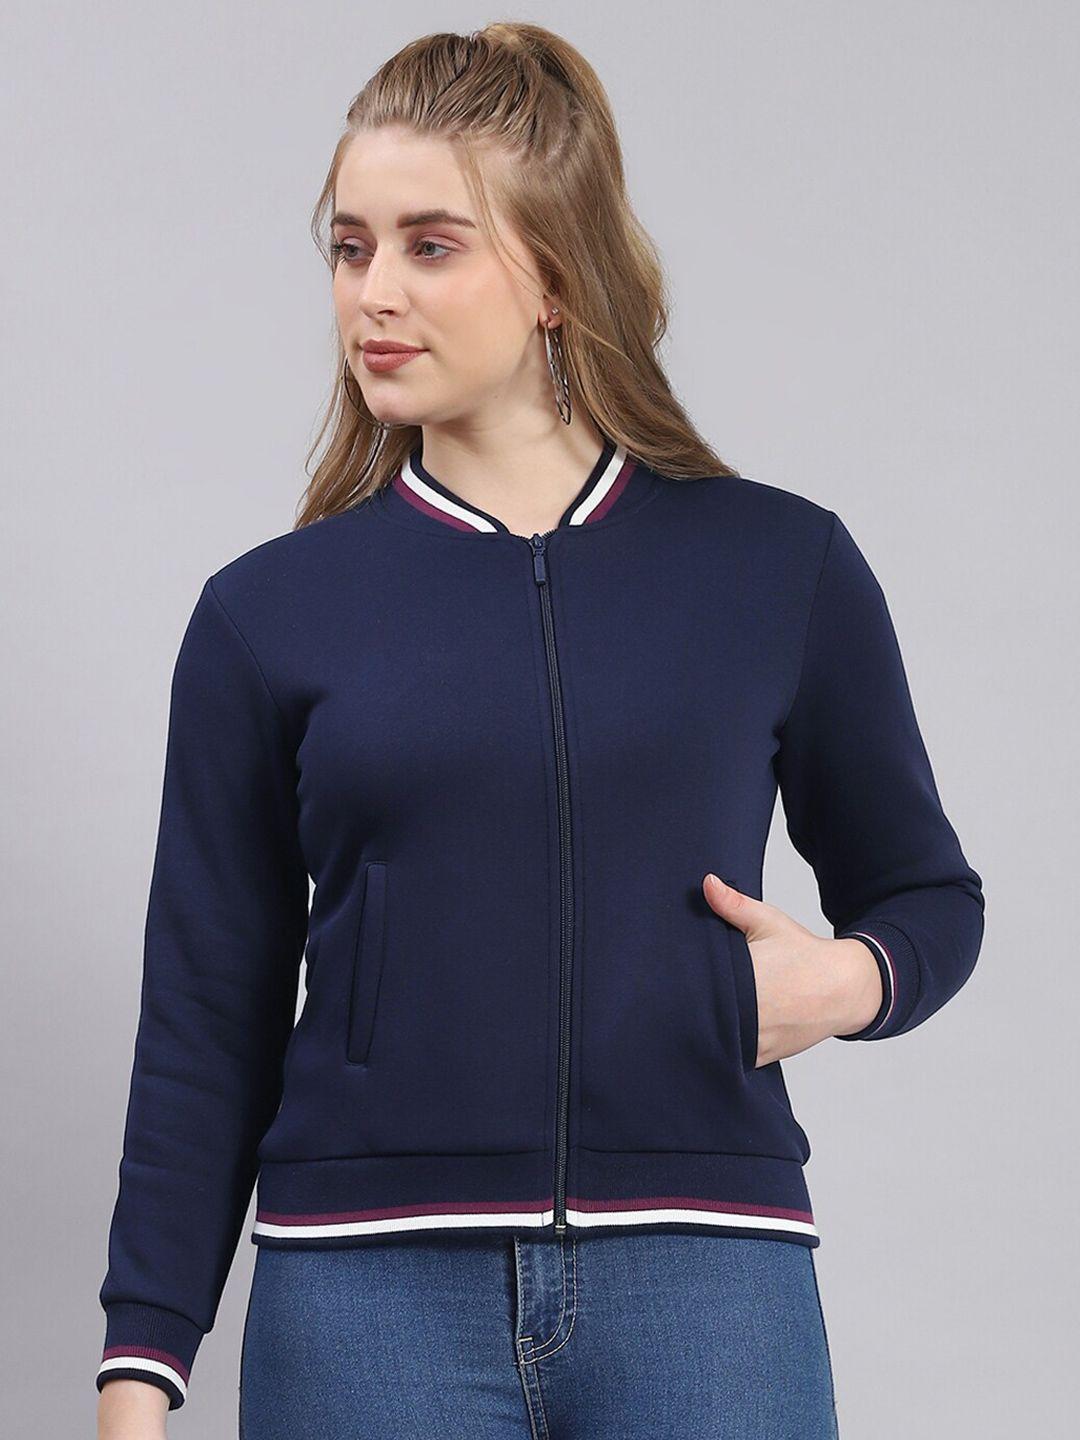 monte-carlo-mock-collar-front-open-sweatshirt